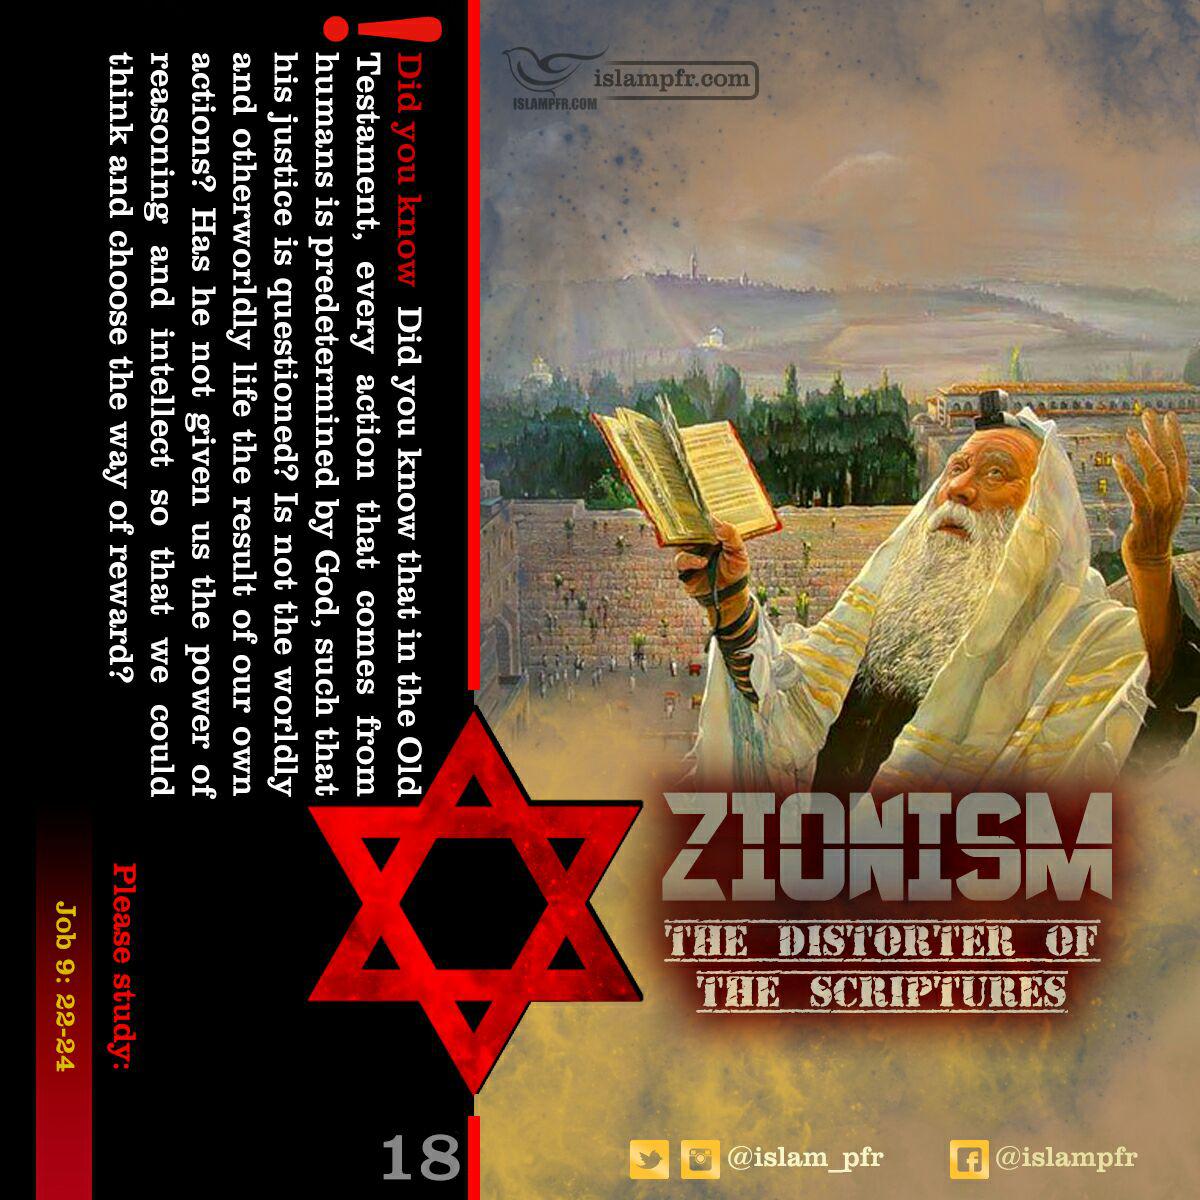 zionism+zion+zionist+israel